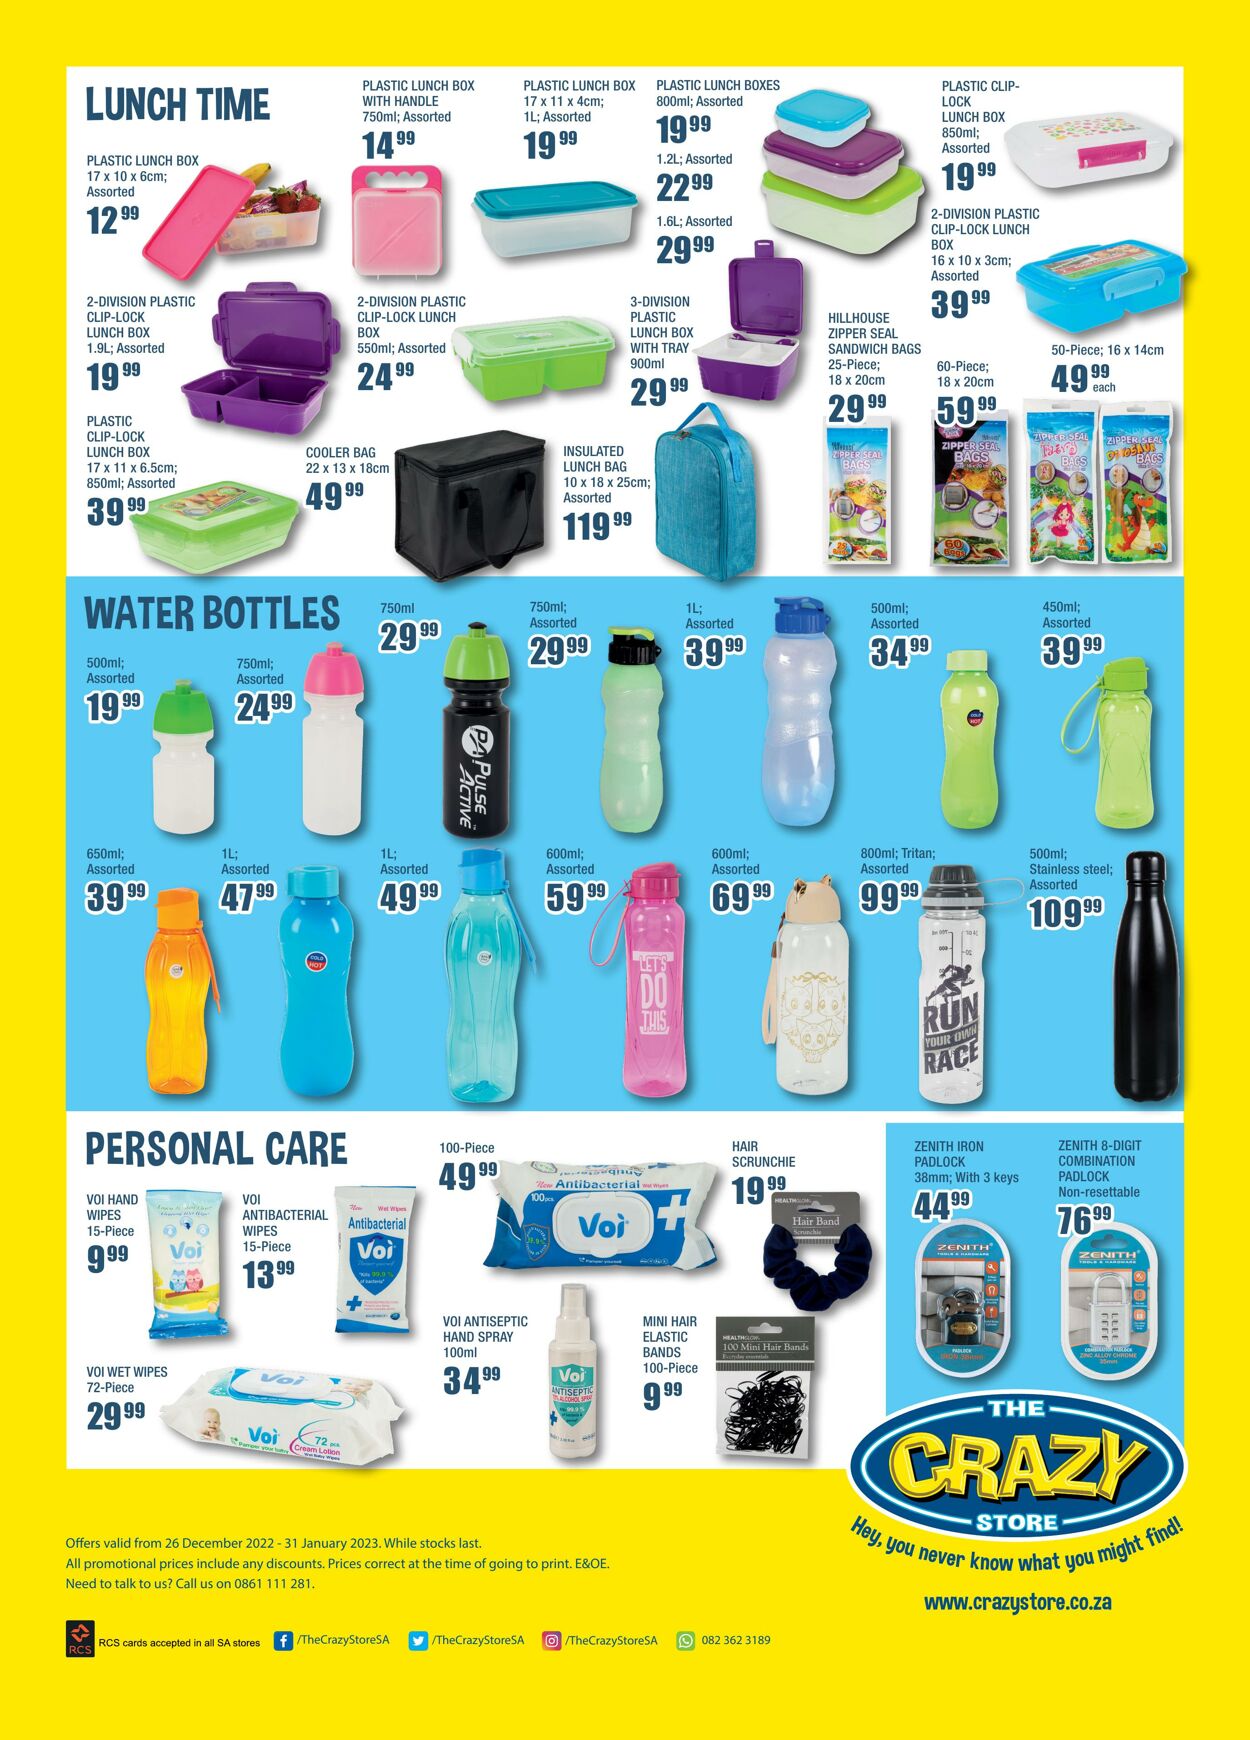 Special Crazy Store 26.12.2023 - 31.12.2023